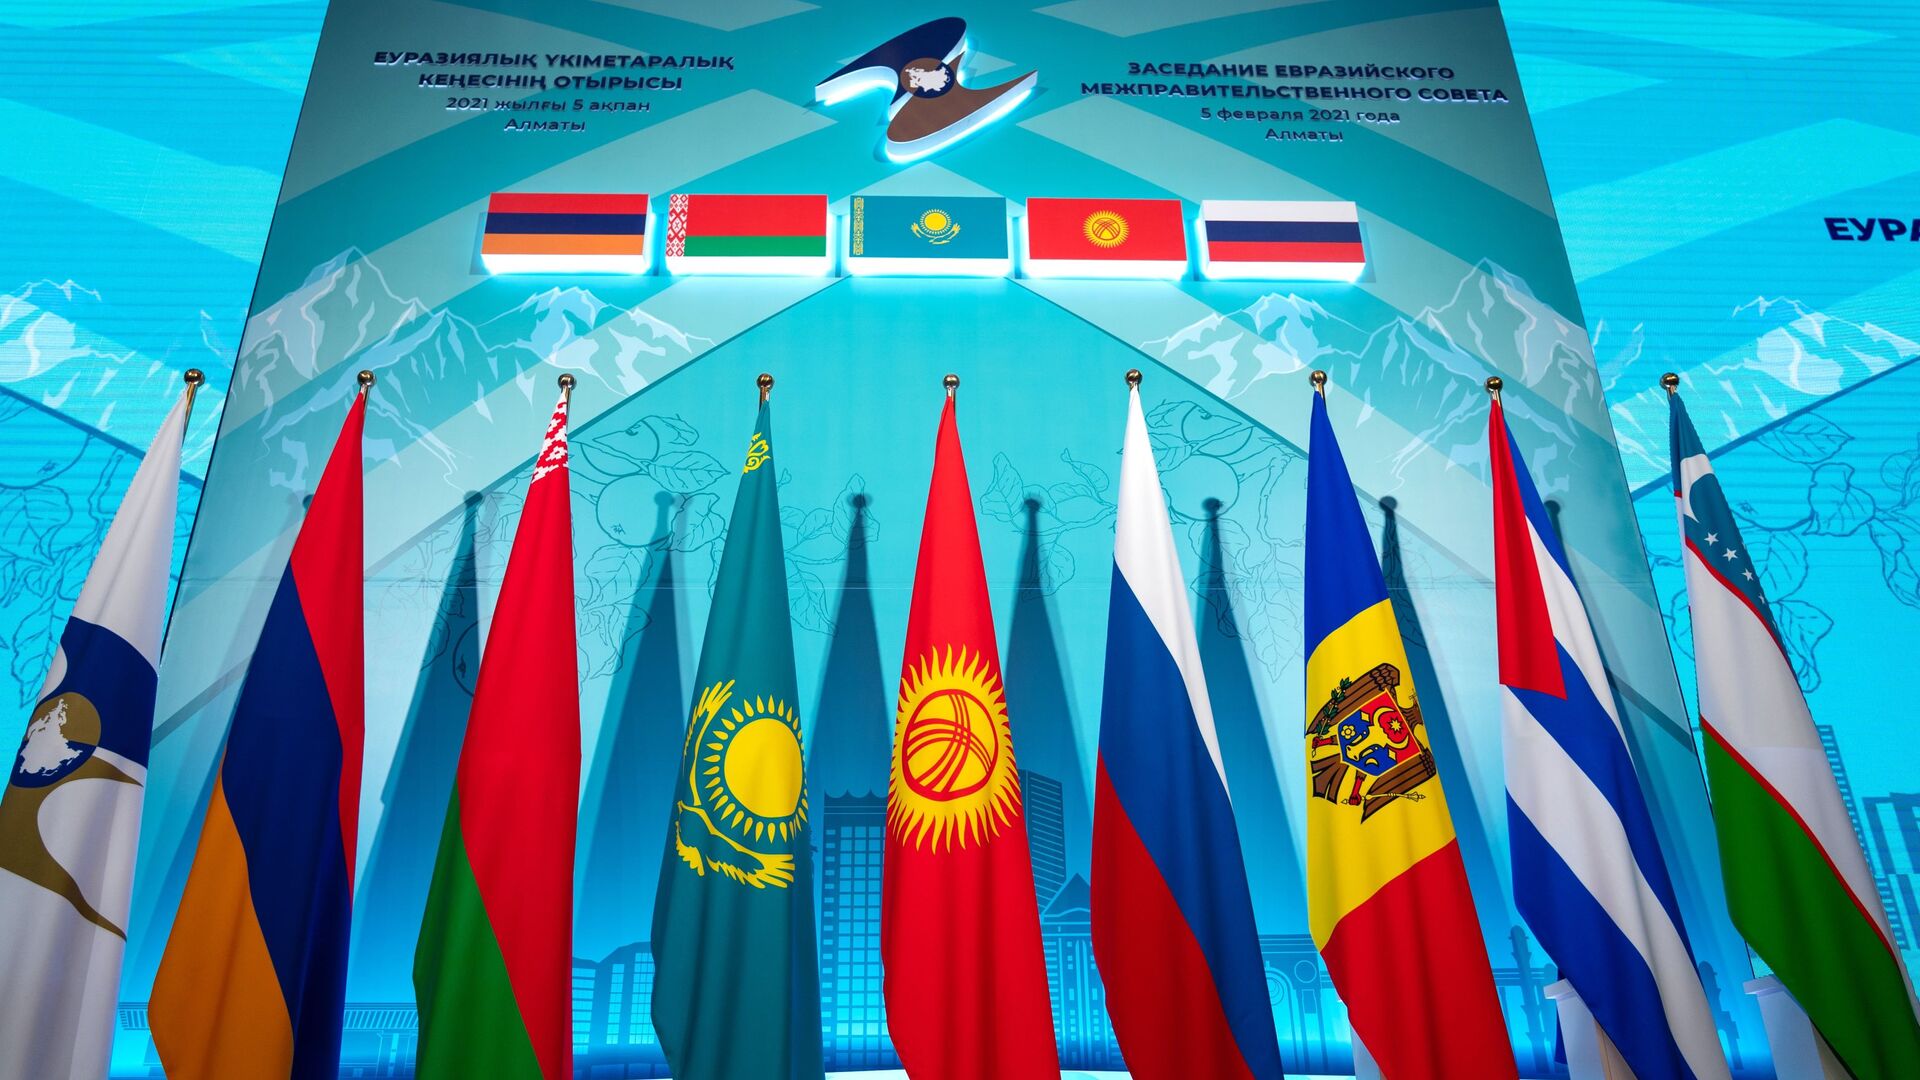 Флаги стран Евразийского межправительственного совета стран ЕАЭС, фото из архива - Sputnik Азербайджан, 1920, 16.12.2021